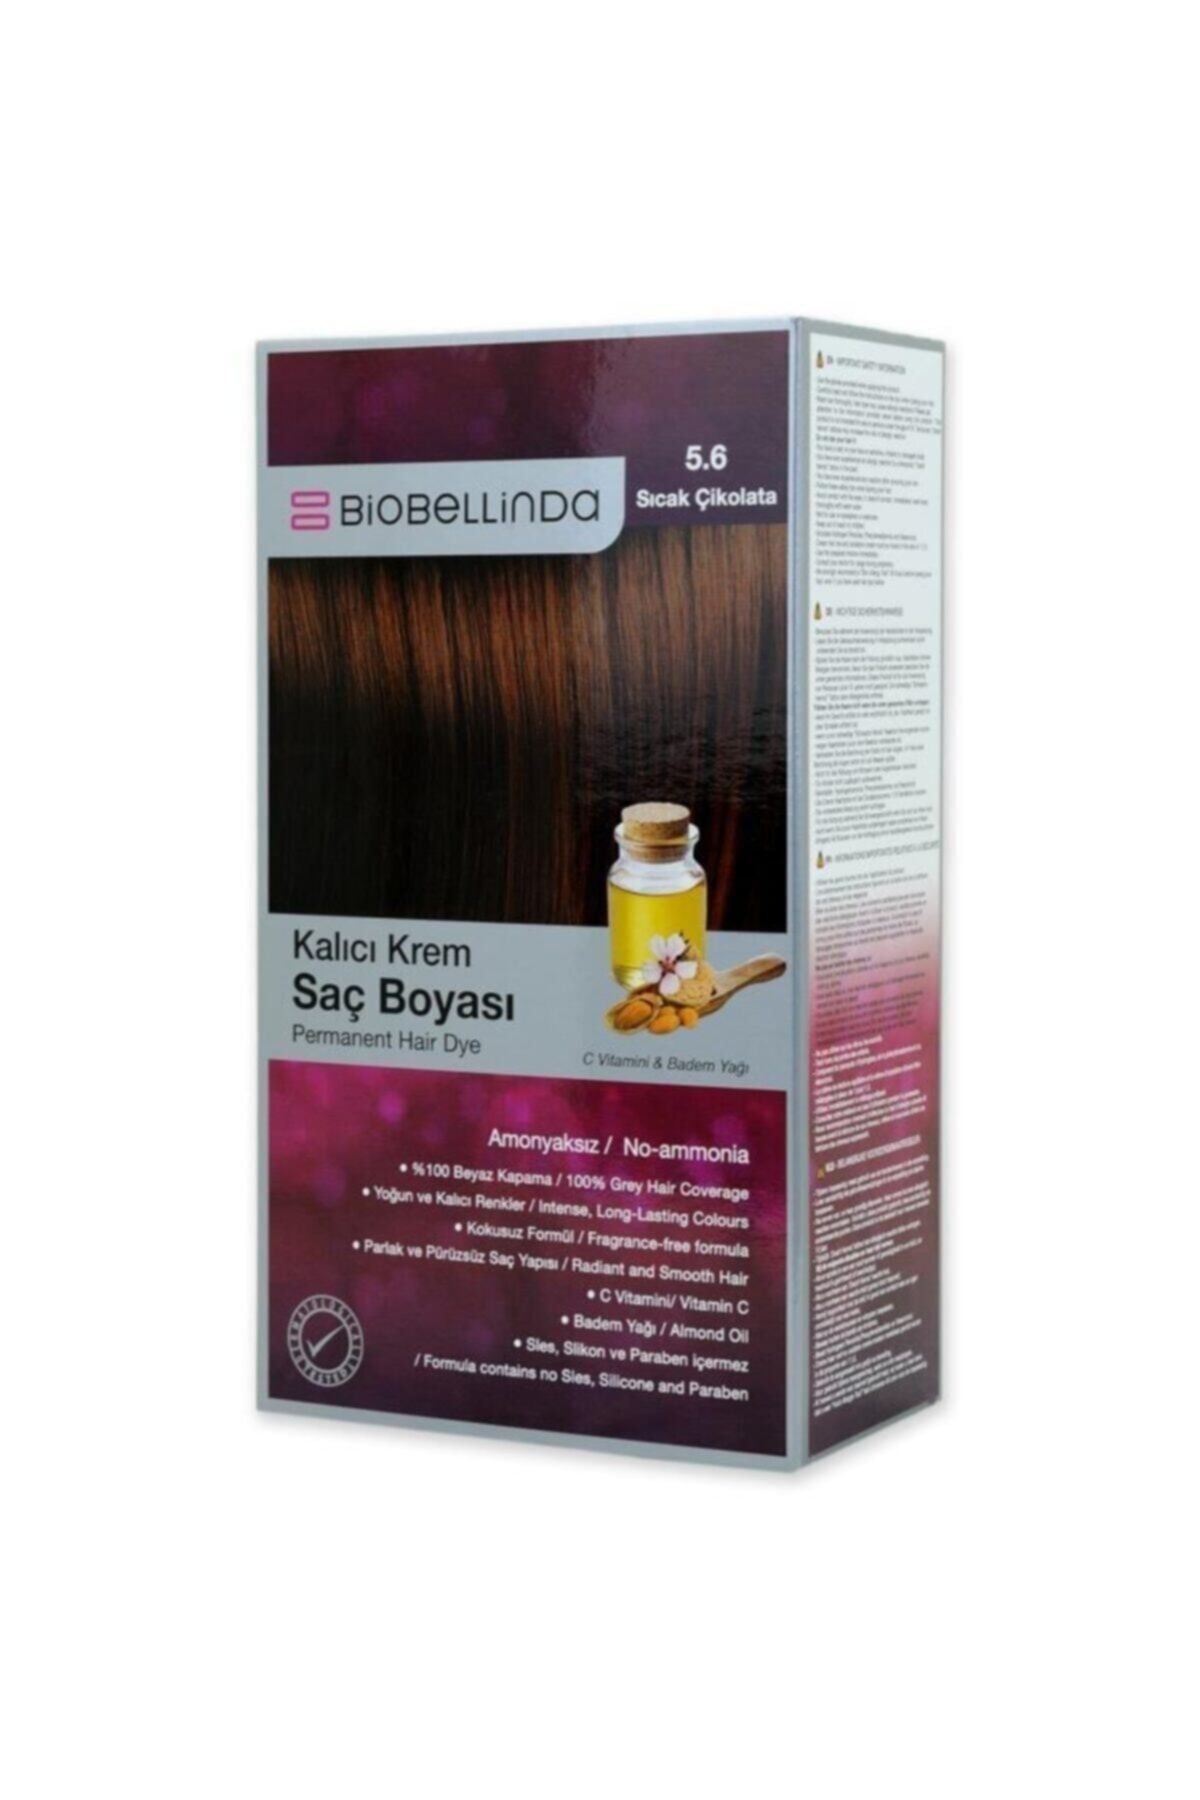 BioBellinda Amonyaksız Ve Kokusuz  5.6 Sıcak Çikolata Kalıcı Krem Saç Boyası